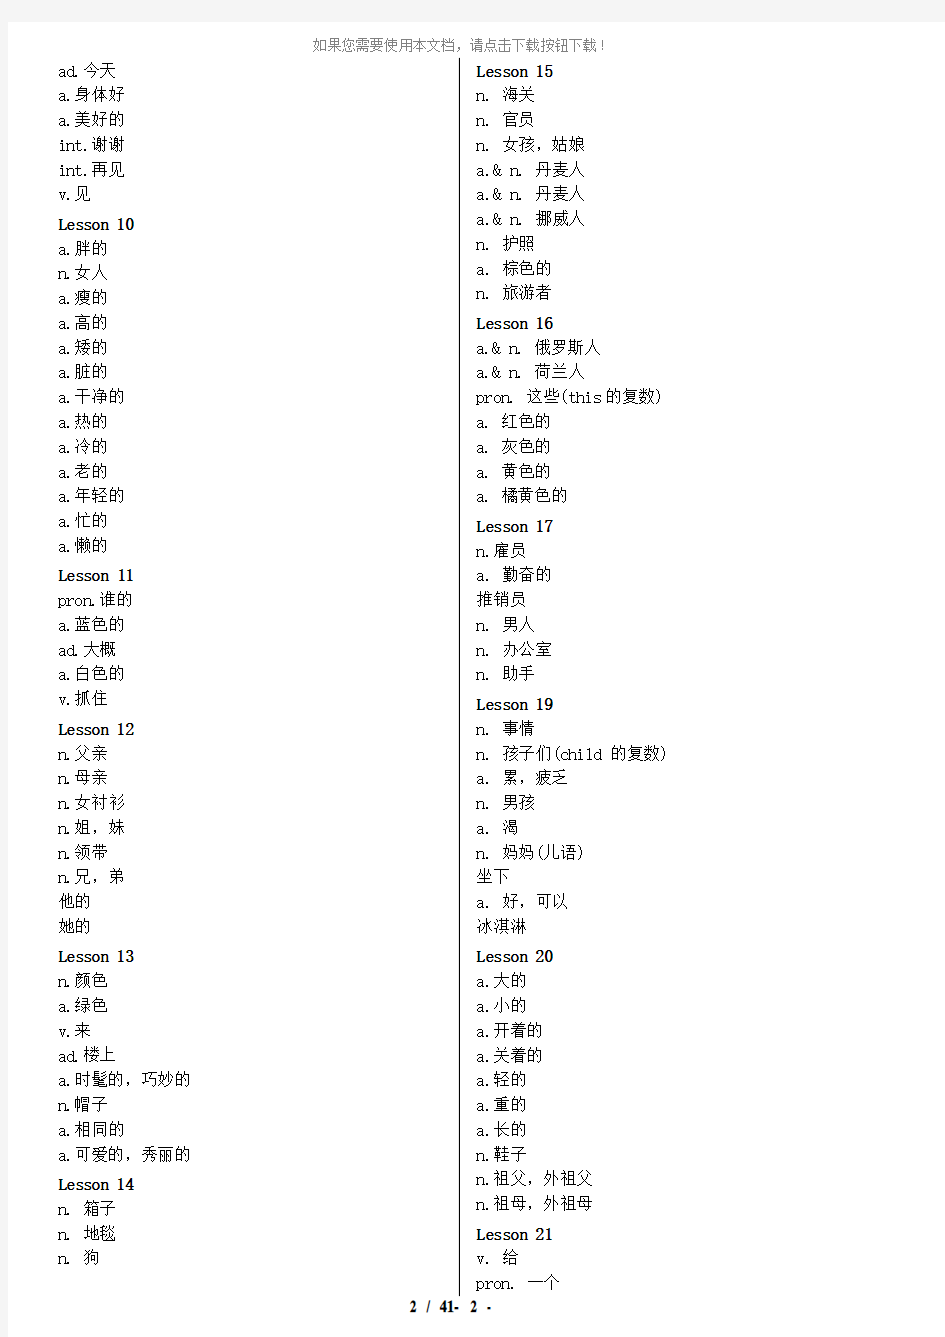 新概念英语单词表-中文版